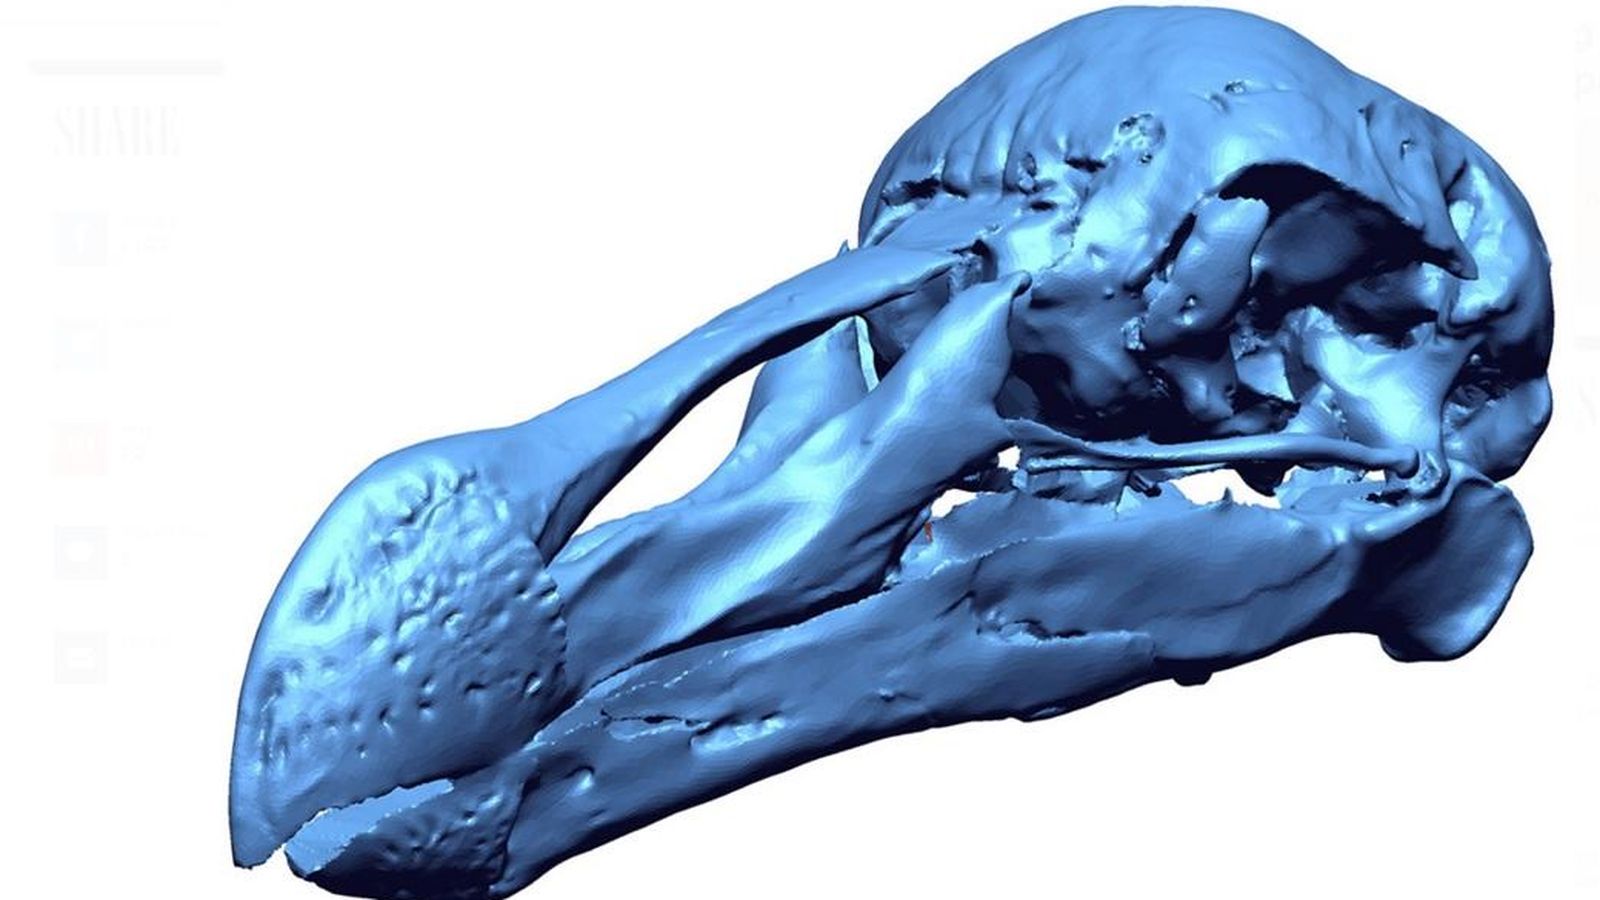 Foto: El análisis del cráneo de este ave dará pistas a los científicos sobre su dieta. (Mauritius Museums Council)